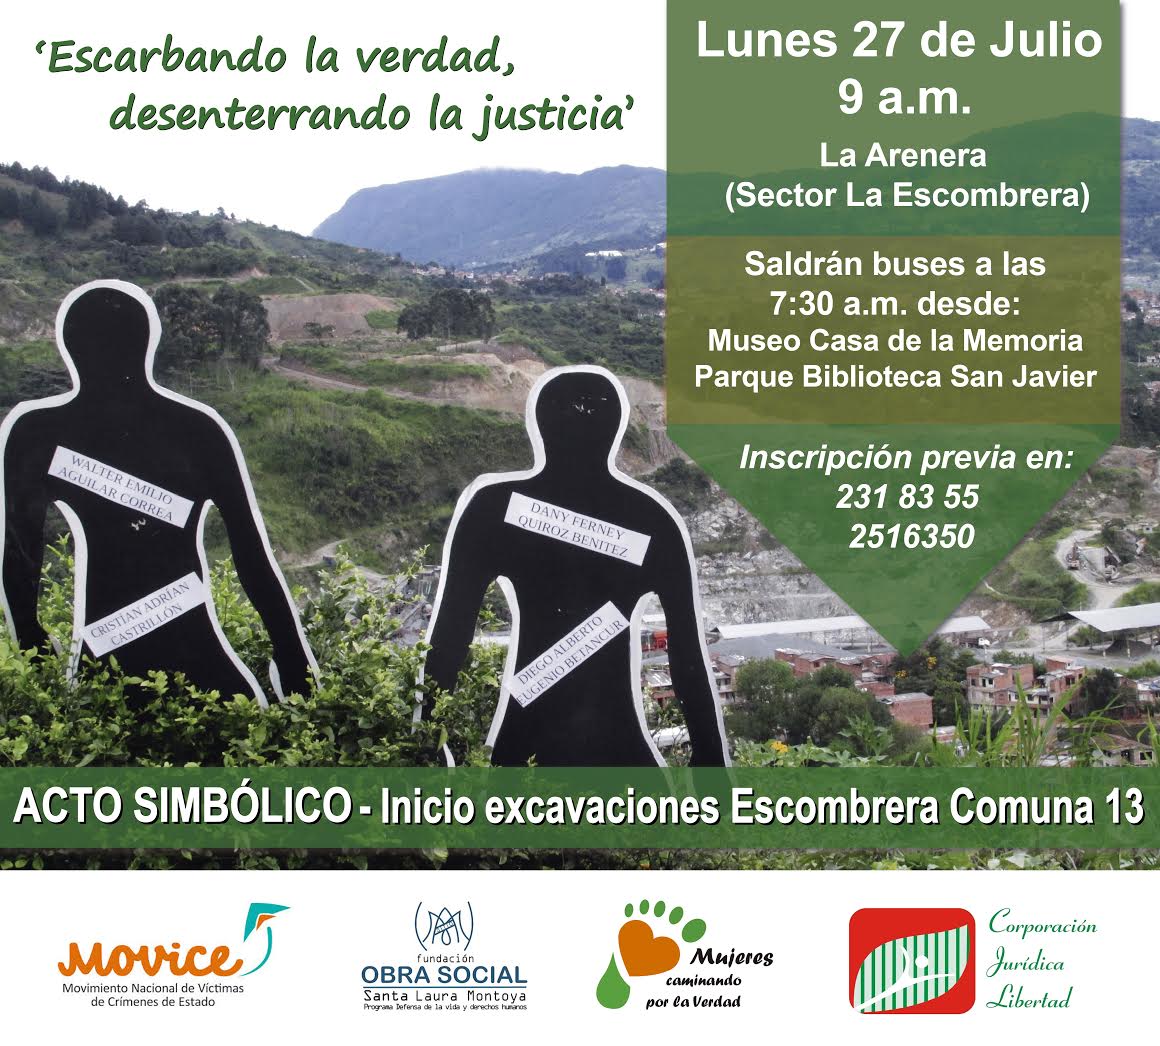 Próximo lunes 27 de julio, acto simbólico por inicio de excavaciones en la Escombrera de la Comuna 13